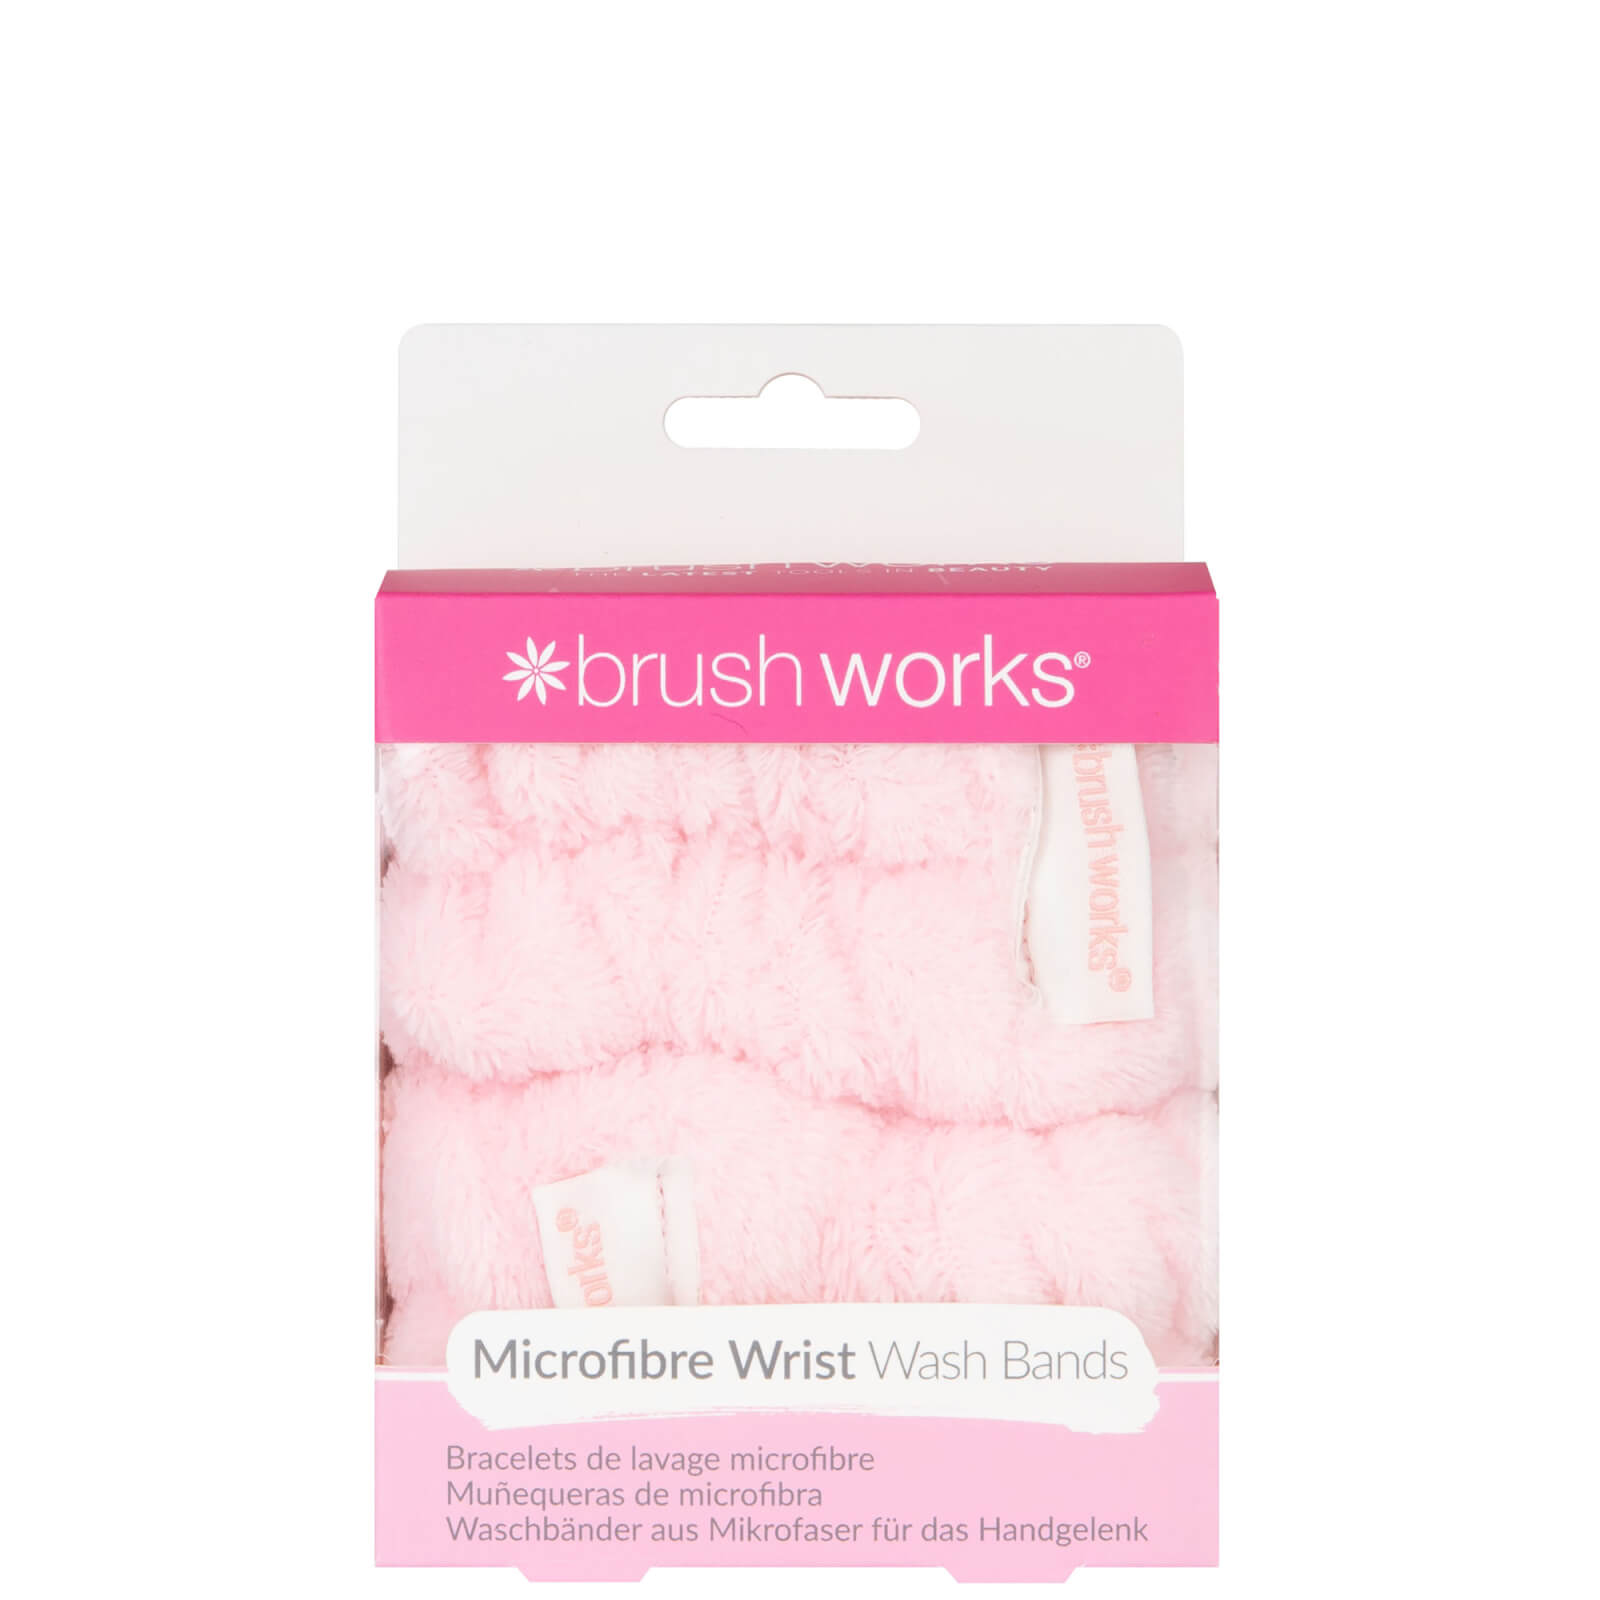 Image of Brushworks Microfibre Wrist Wash Bands - 2 Pack